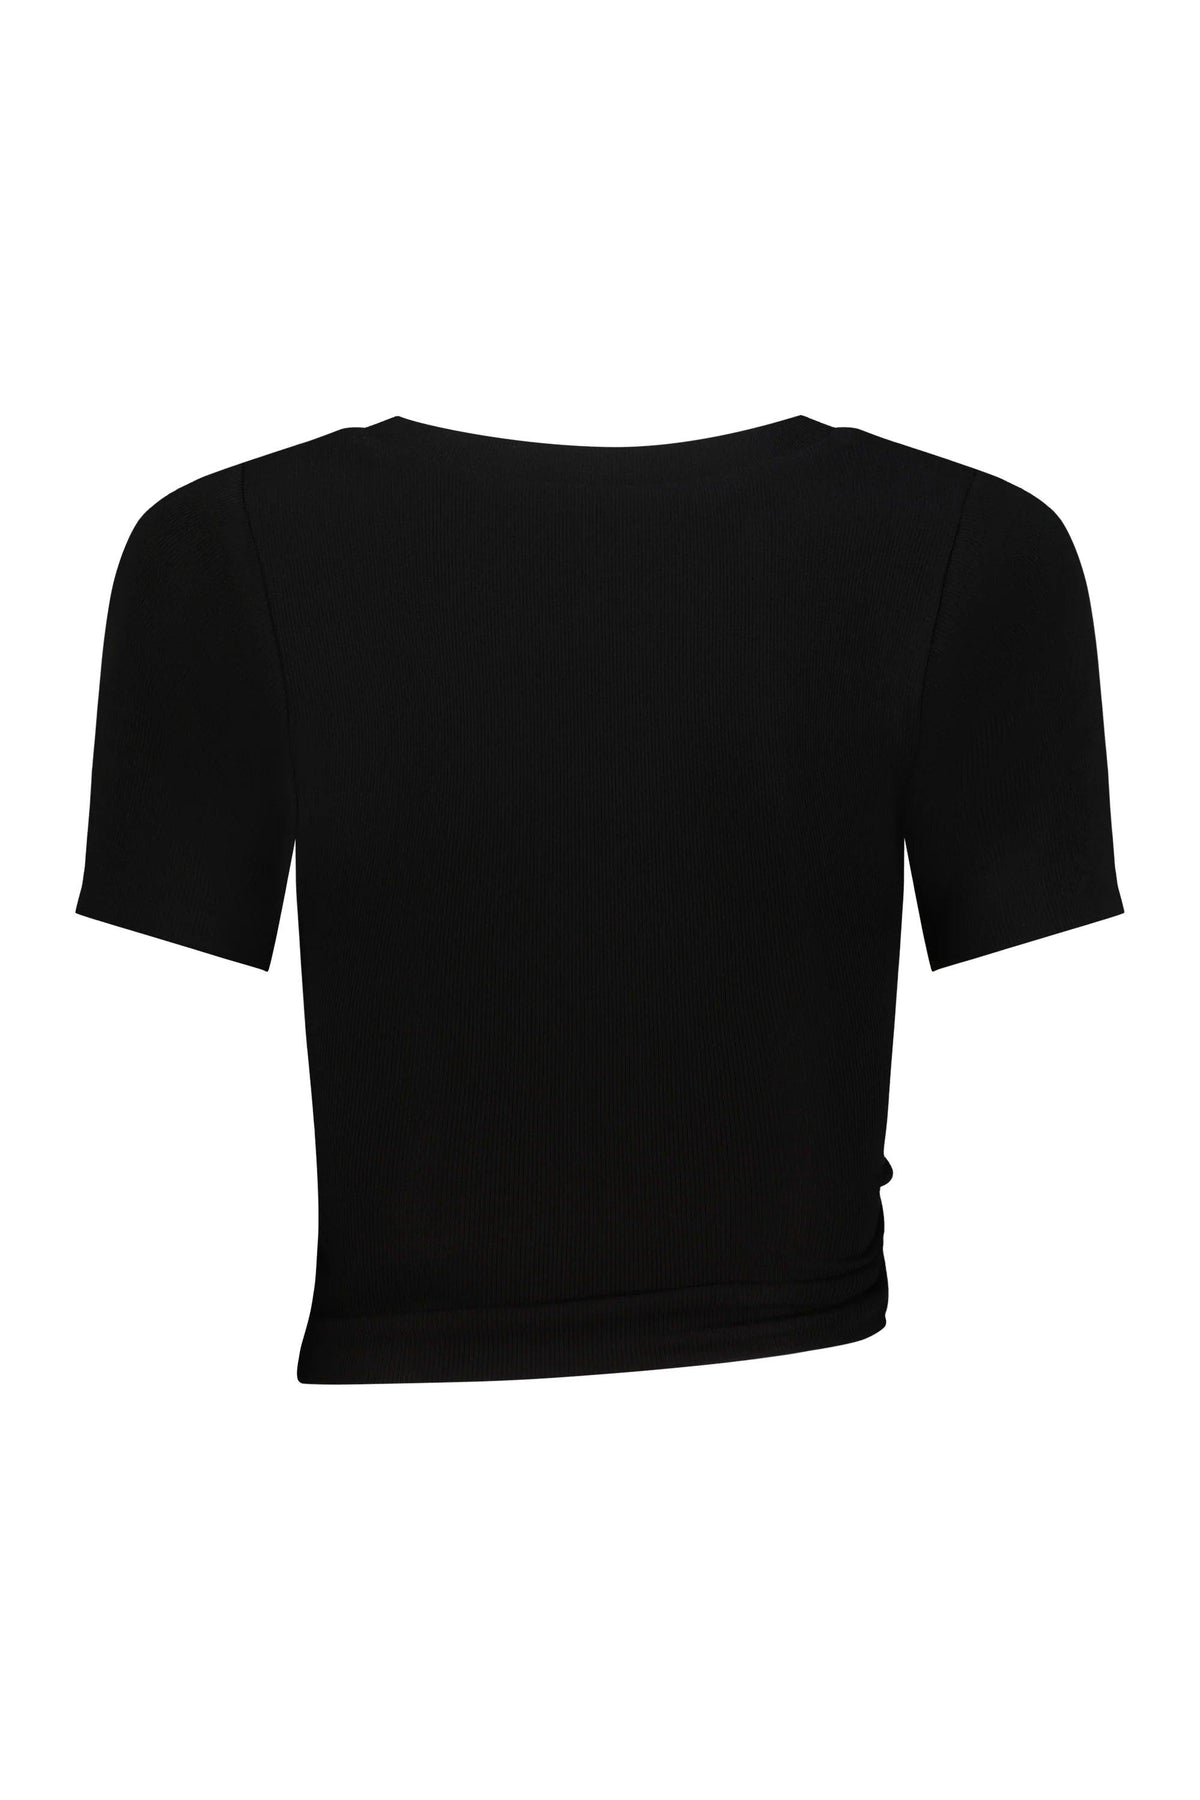 Celene T-Shirt - FLTRD UAE